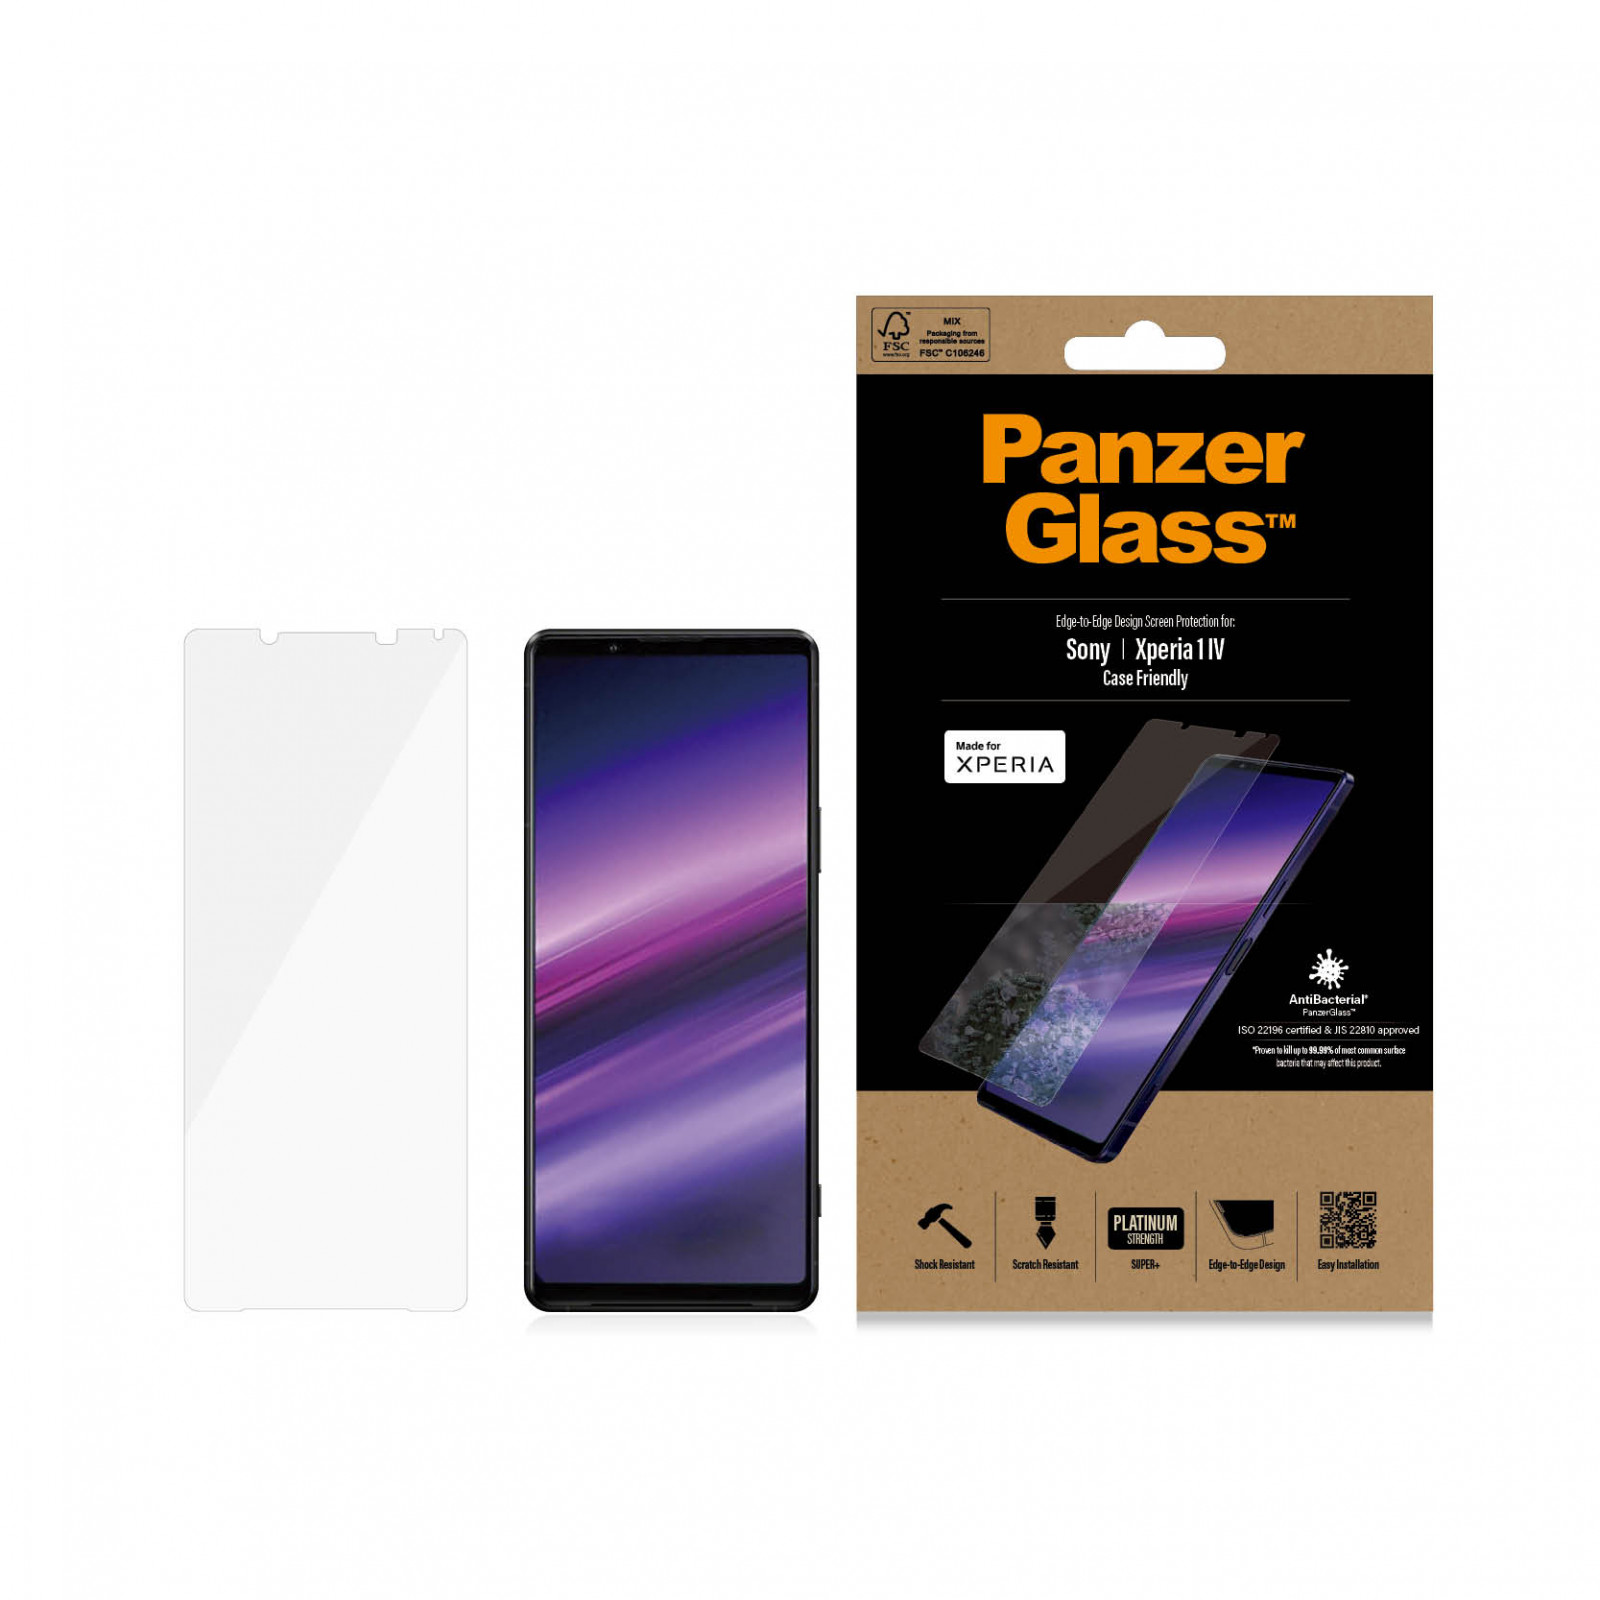 Стъклен протектор PanzerGlass за Sony Xperia 1 lV CaseFriendly, AntiBacterial - Черно